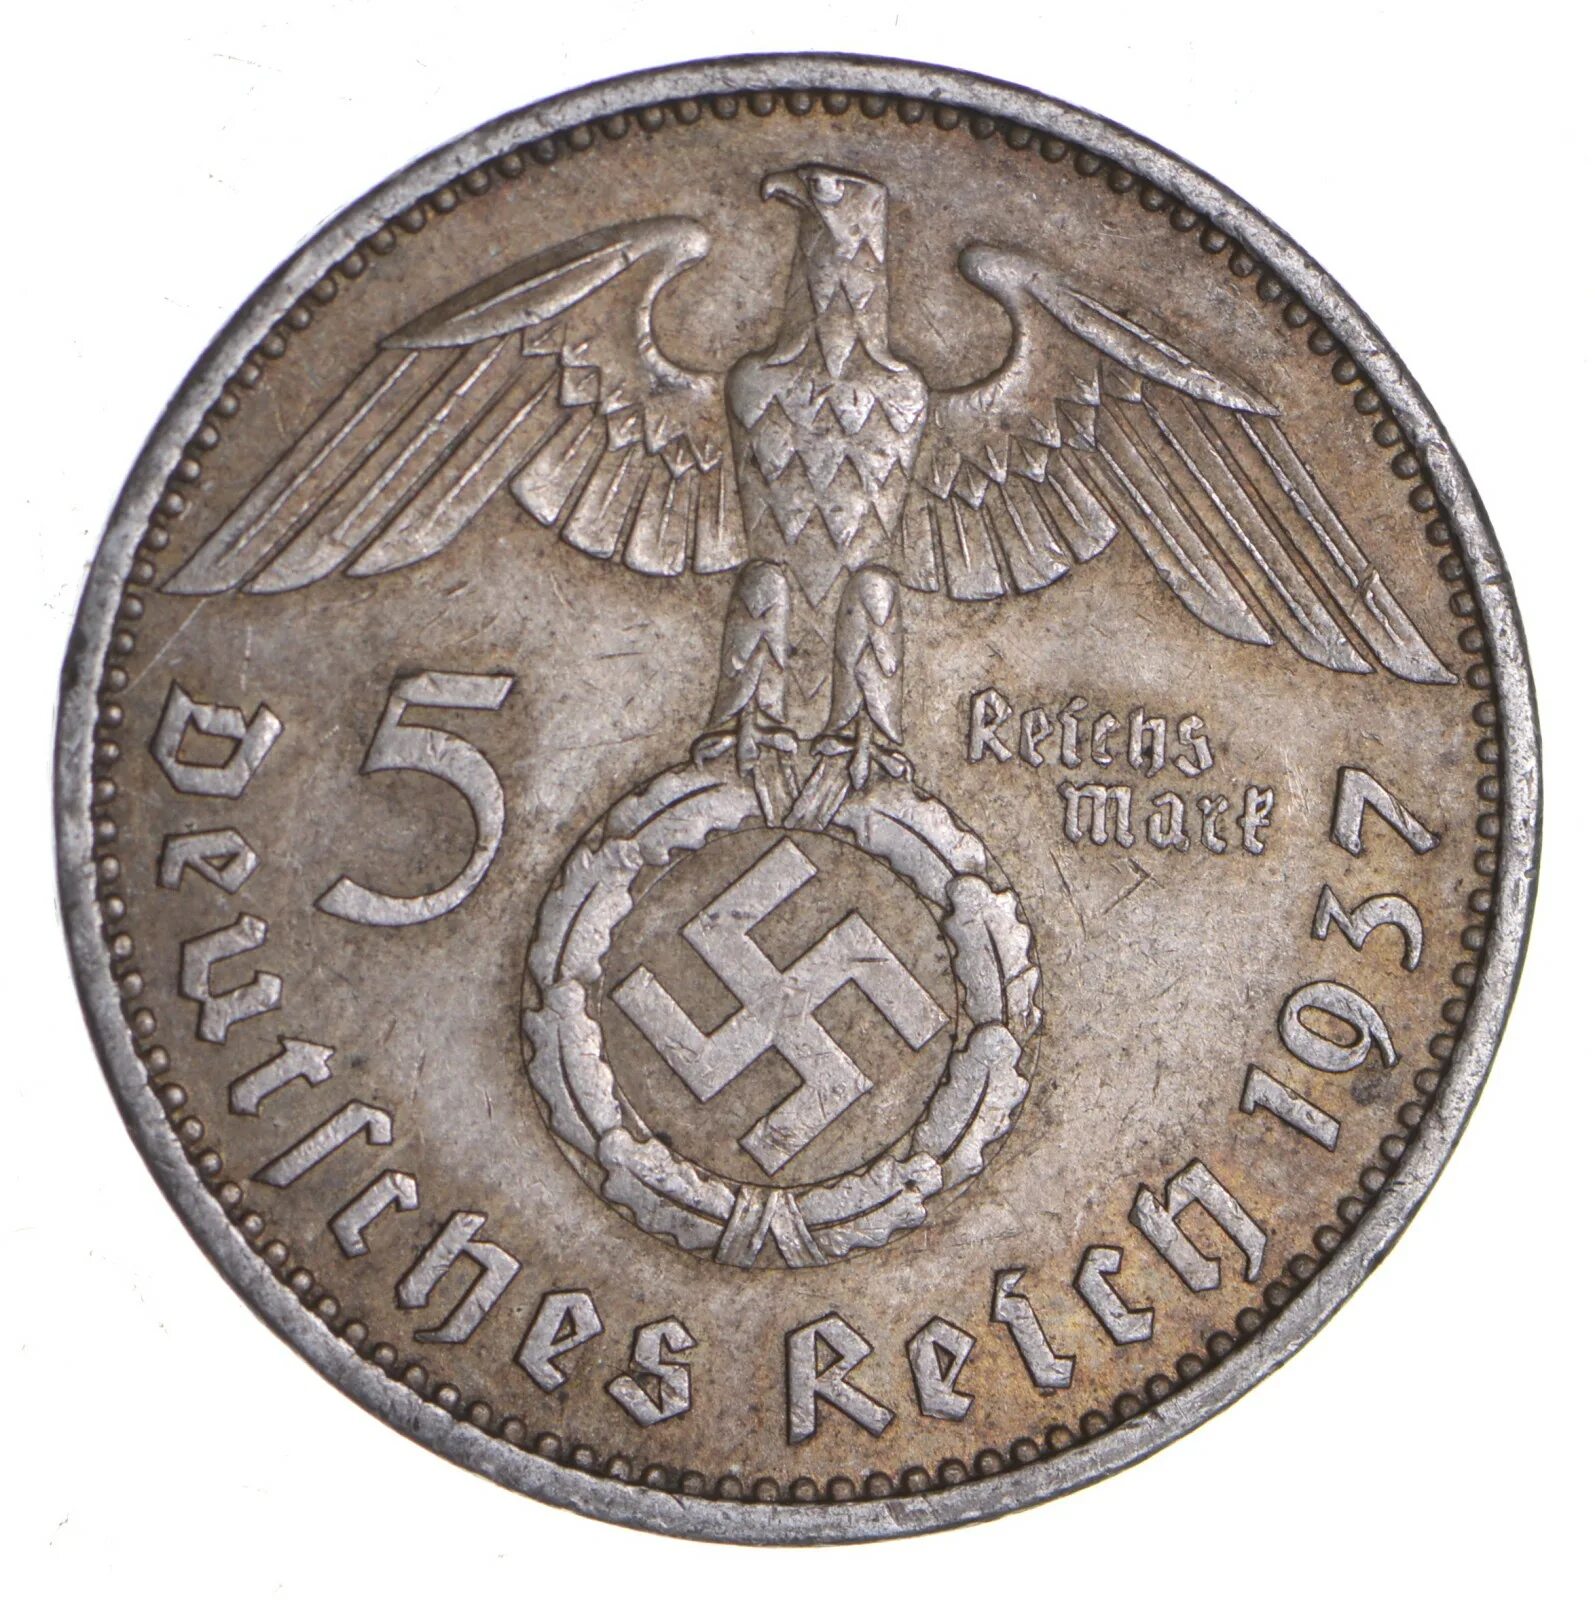 Купить германию 2. Монета немецкая 5 deutktnes Relin 1937. Монетка 1939 Германия. Немецкие монеты второй мировой войны. Монета 1937 немецкая со свастикой.